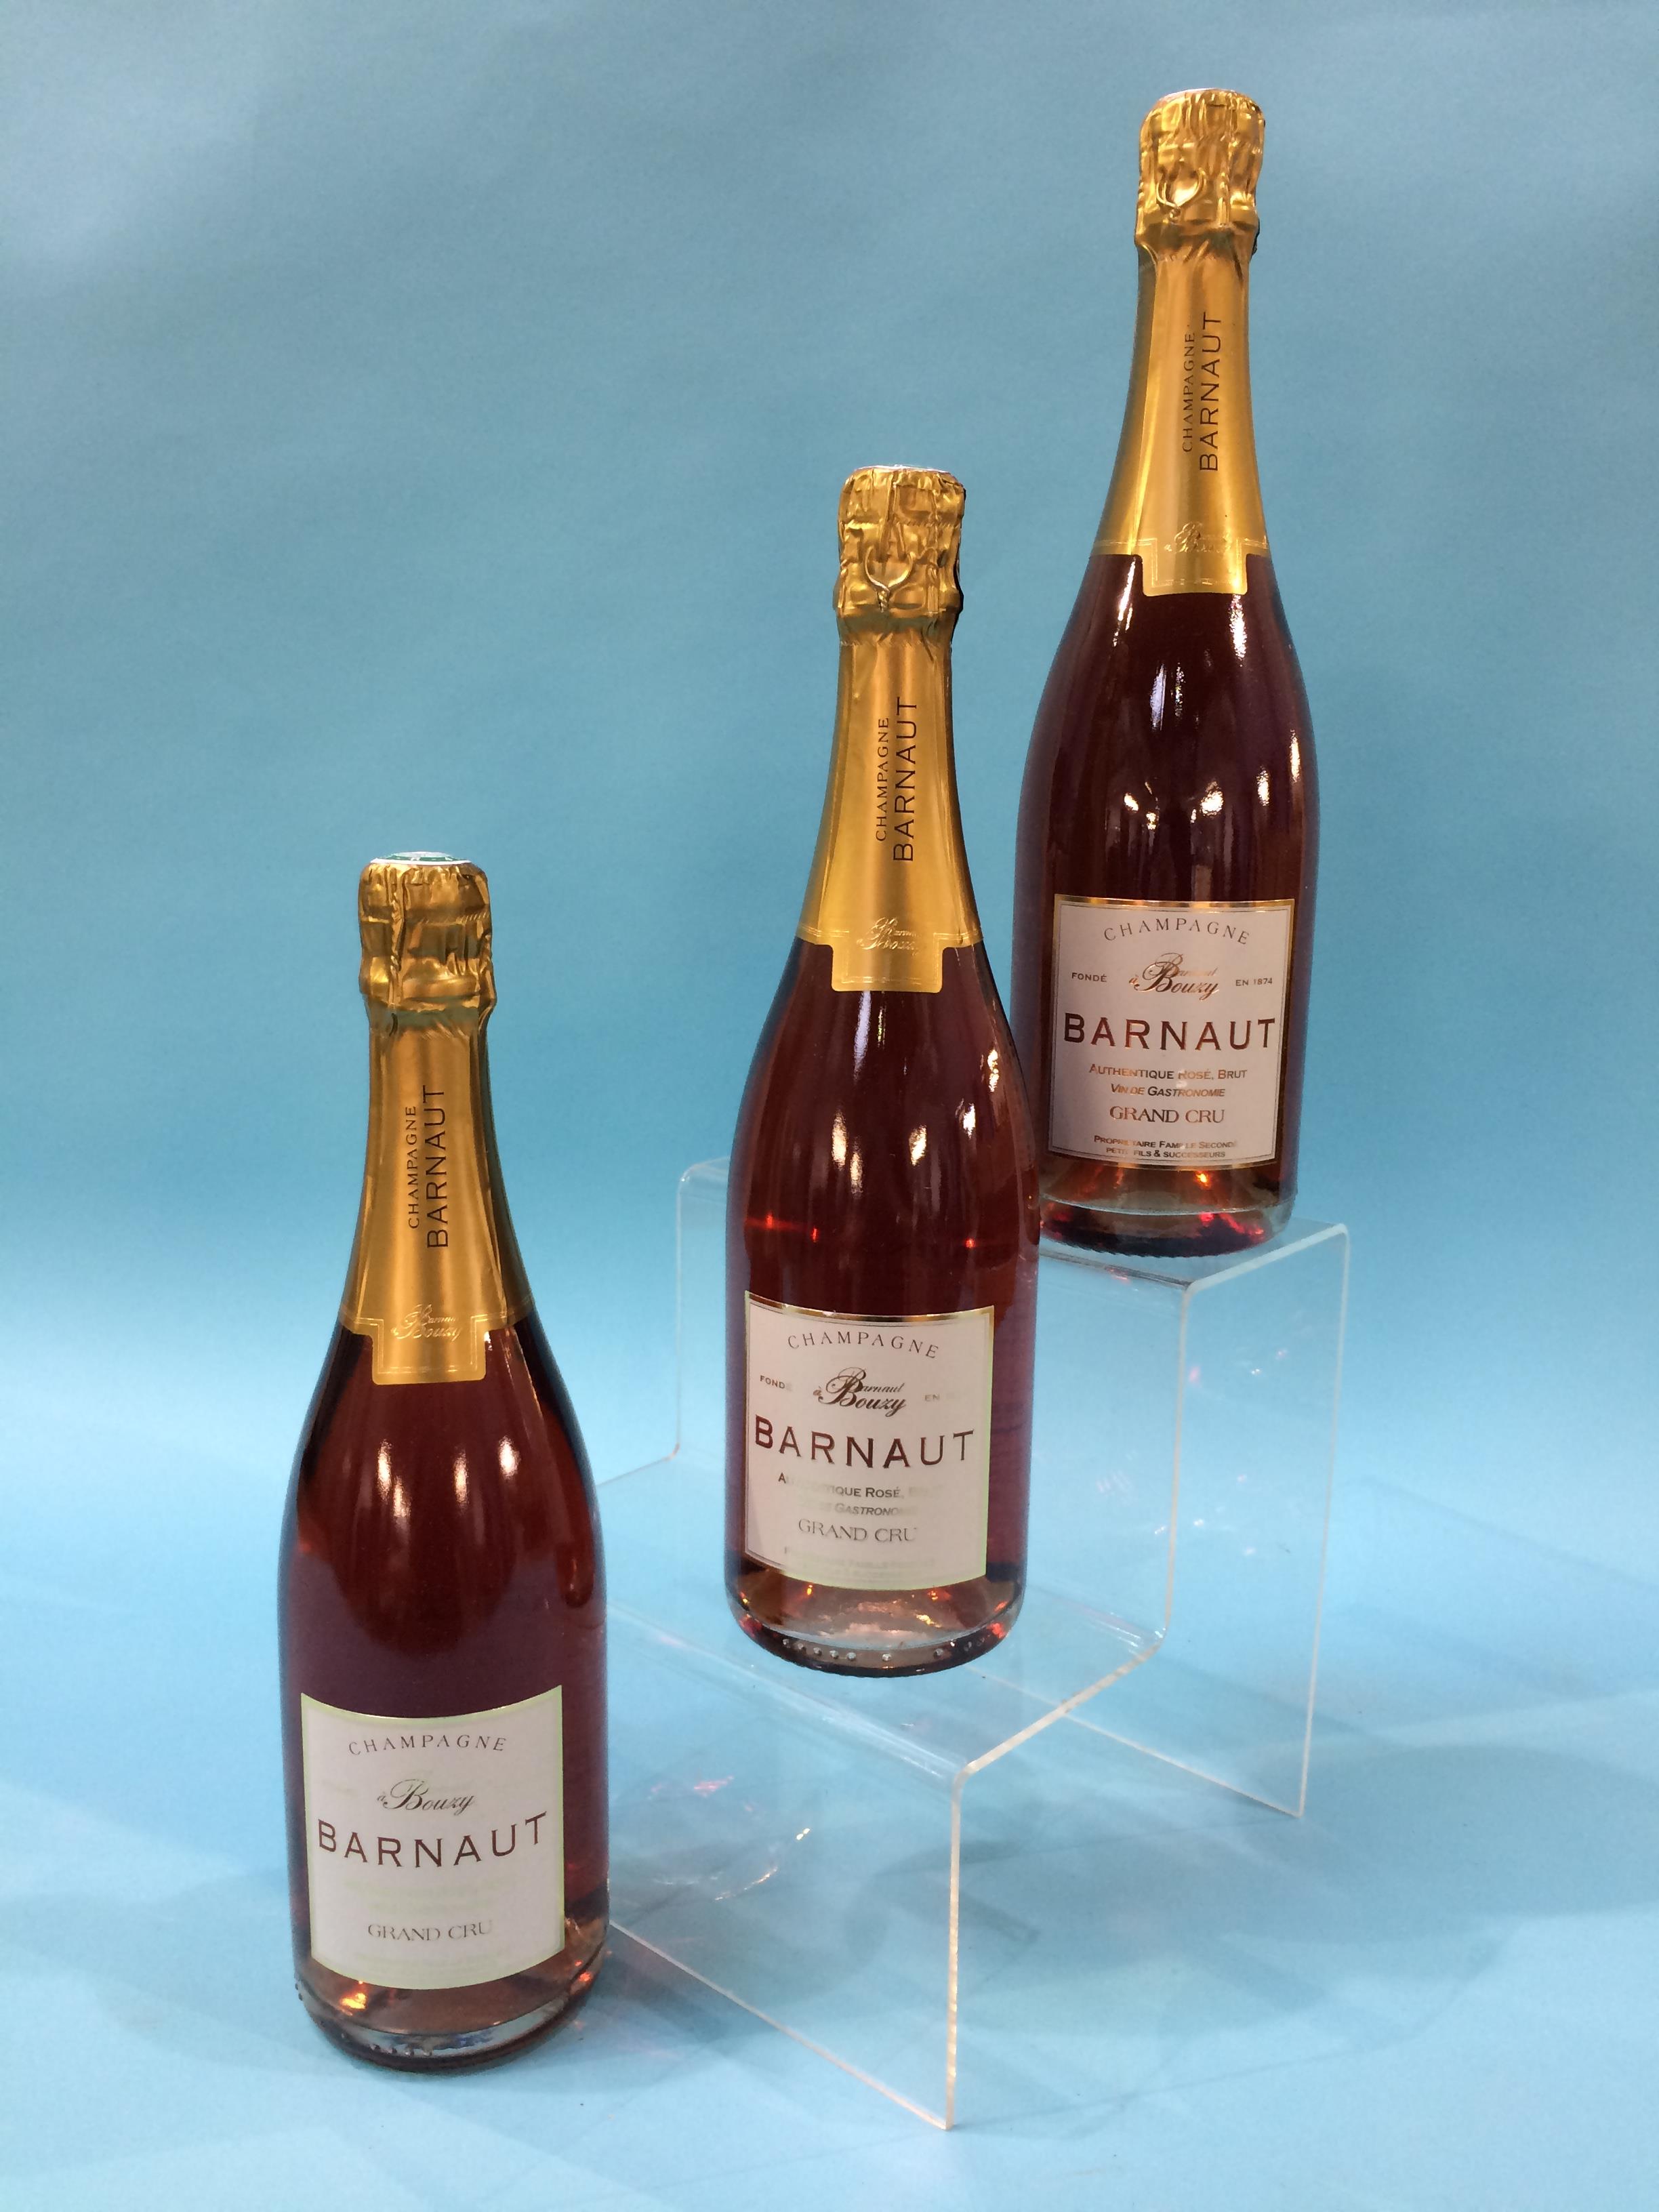 Barnaut Champagne, Authentique Rose Brut Vin De Gastronomie, Grand Cru (6 bottles)